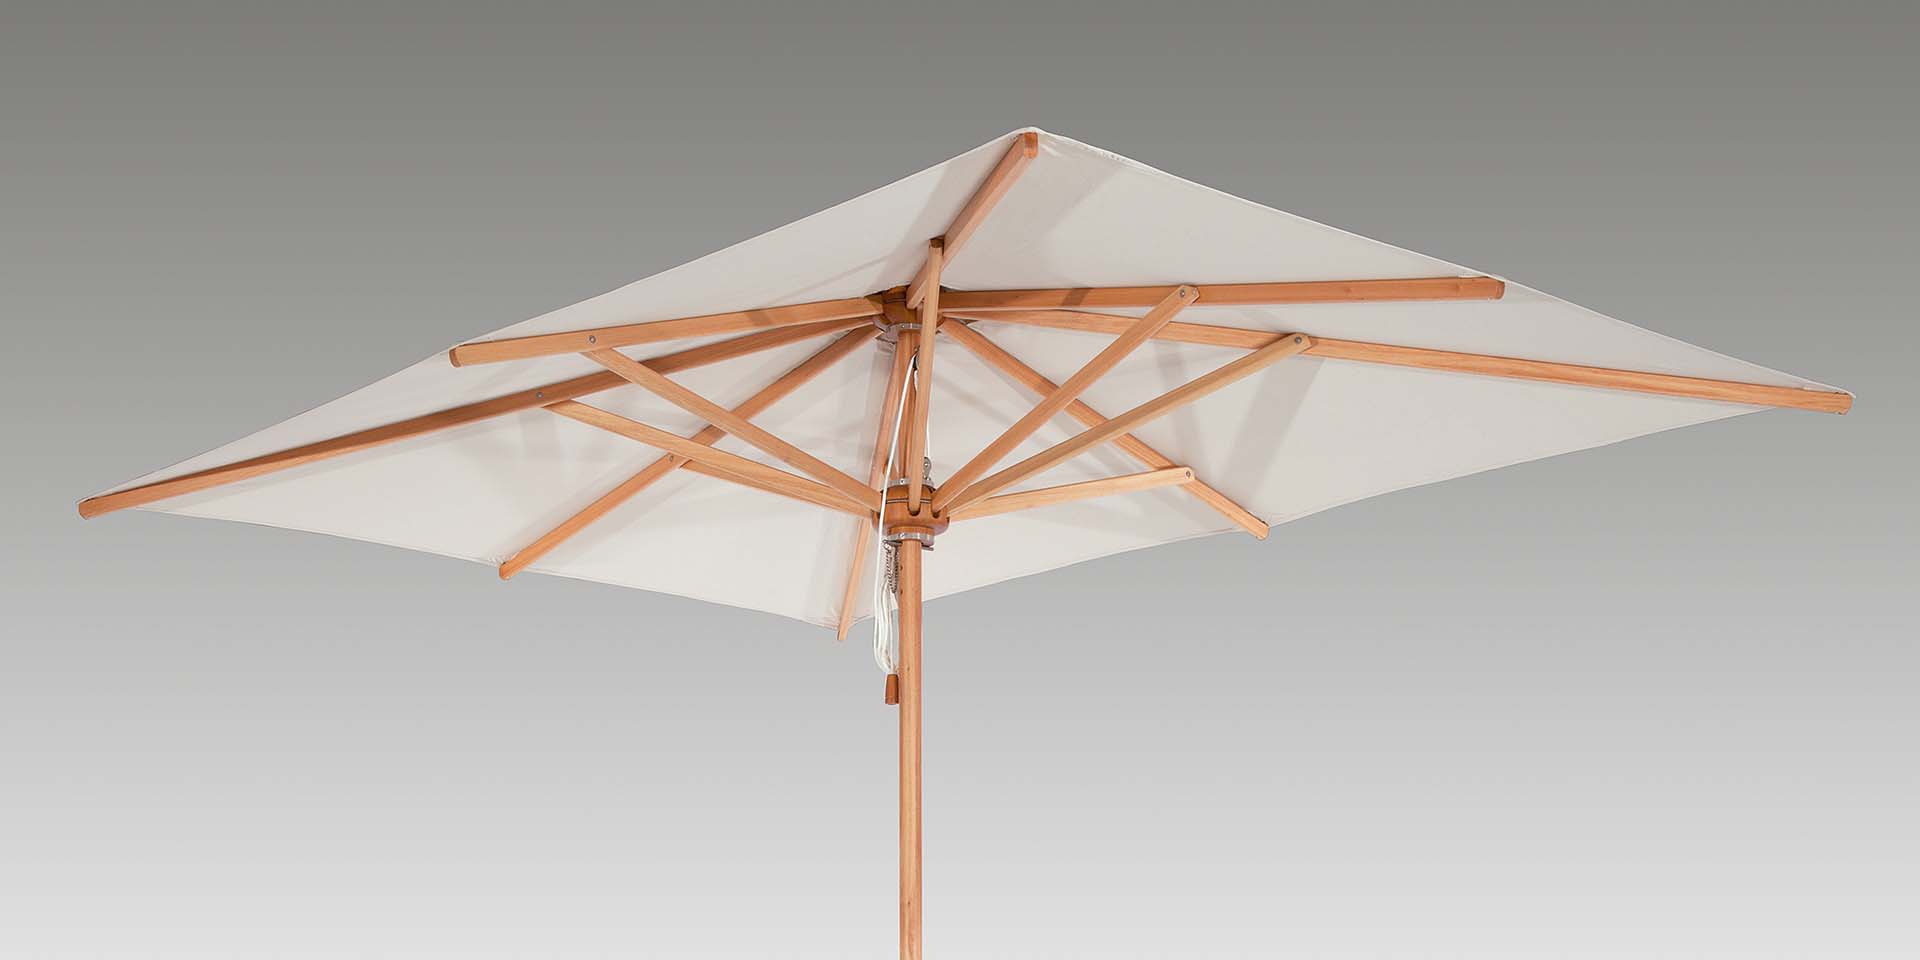 Overwegen evalueren vraag naar Napoli 11.5' Rectangular Umbrella on SALE NOW at Atlantic Patio!